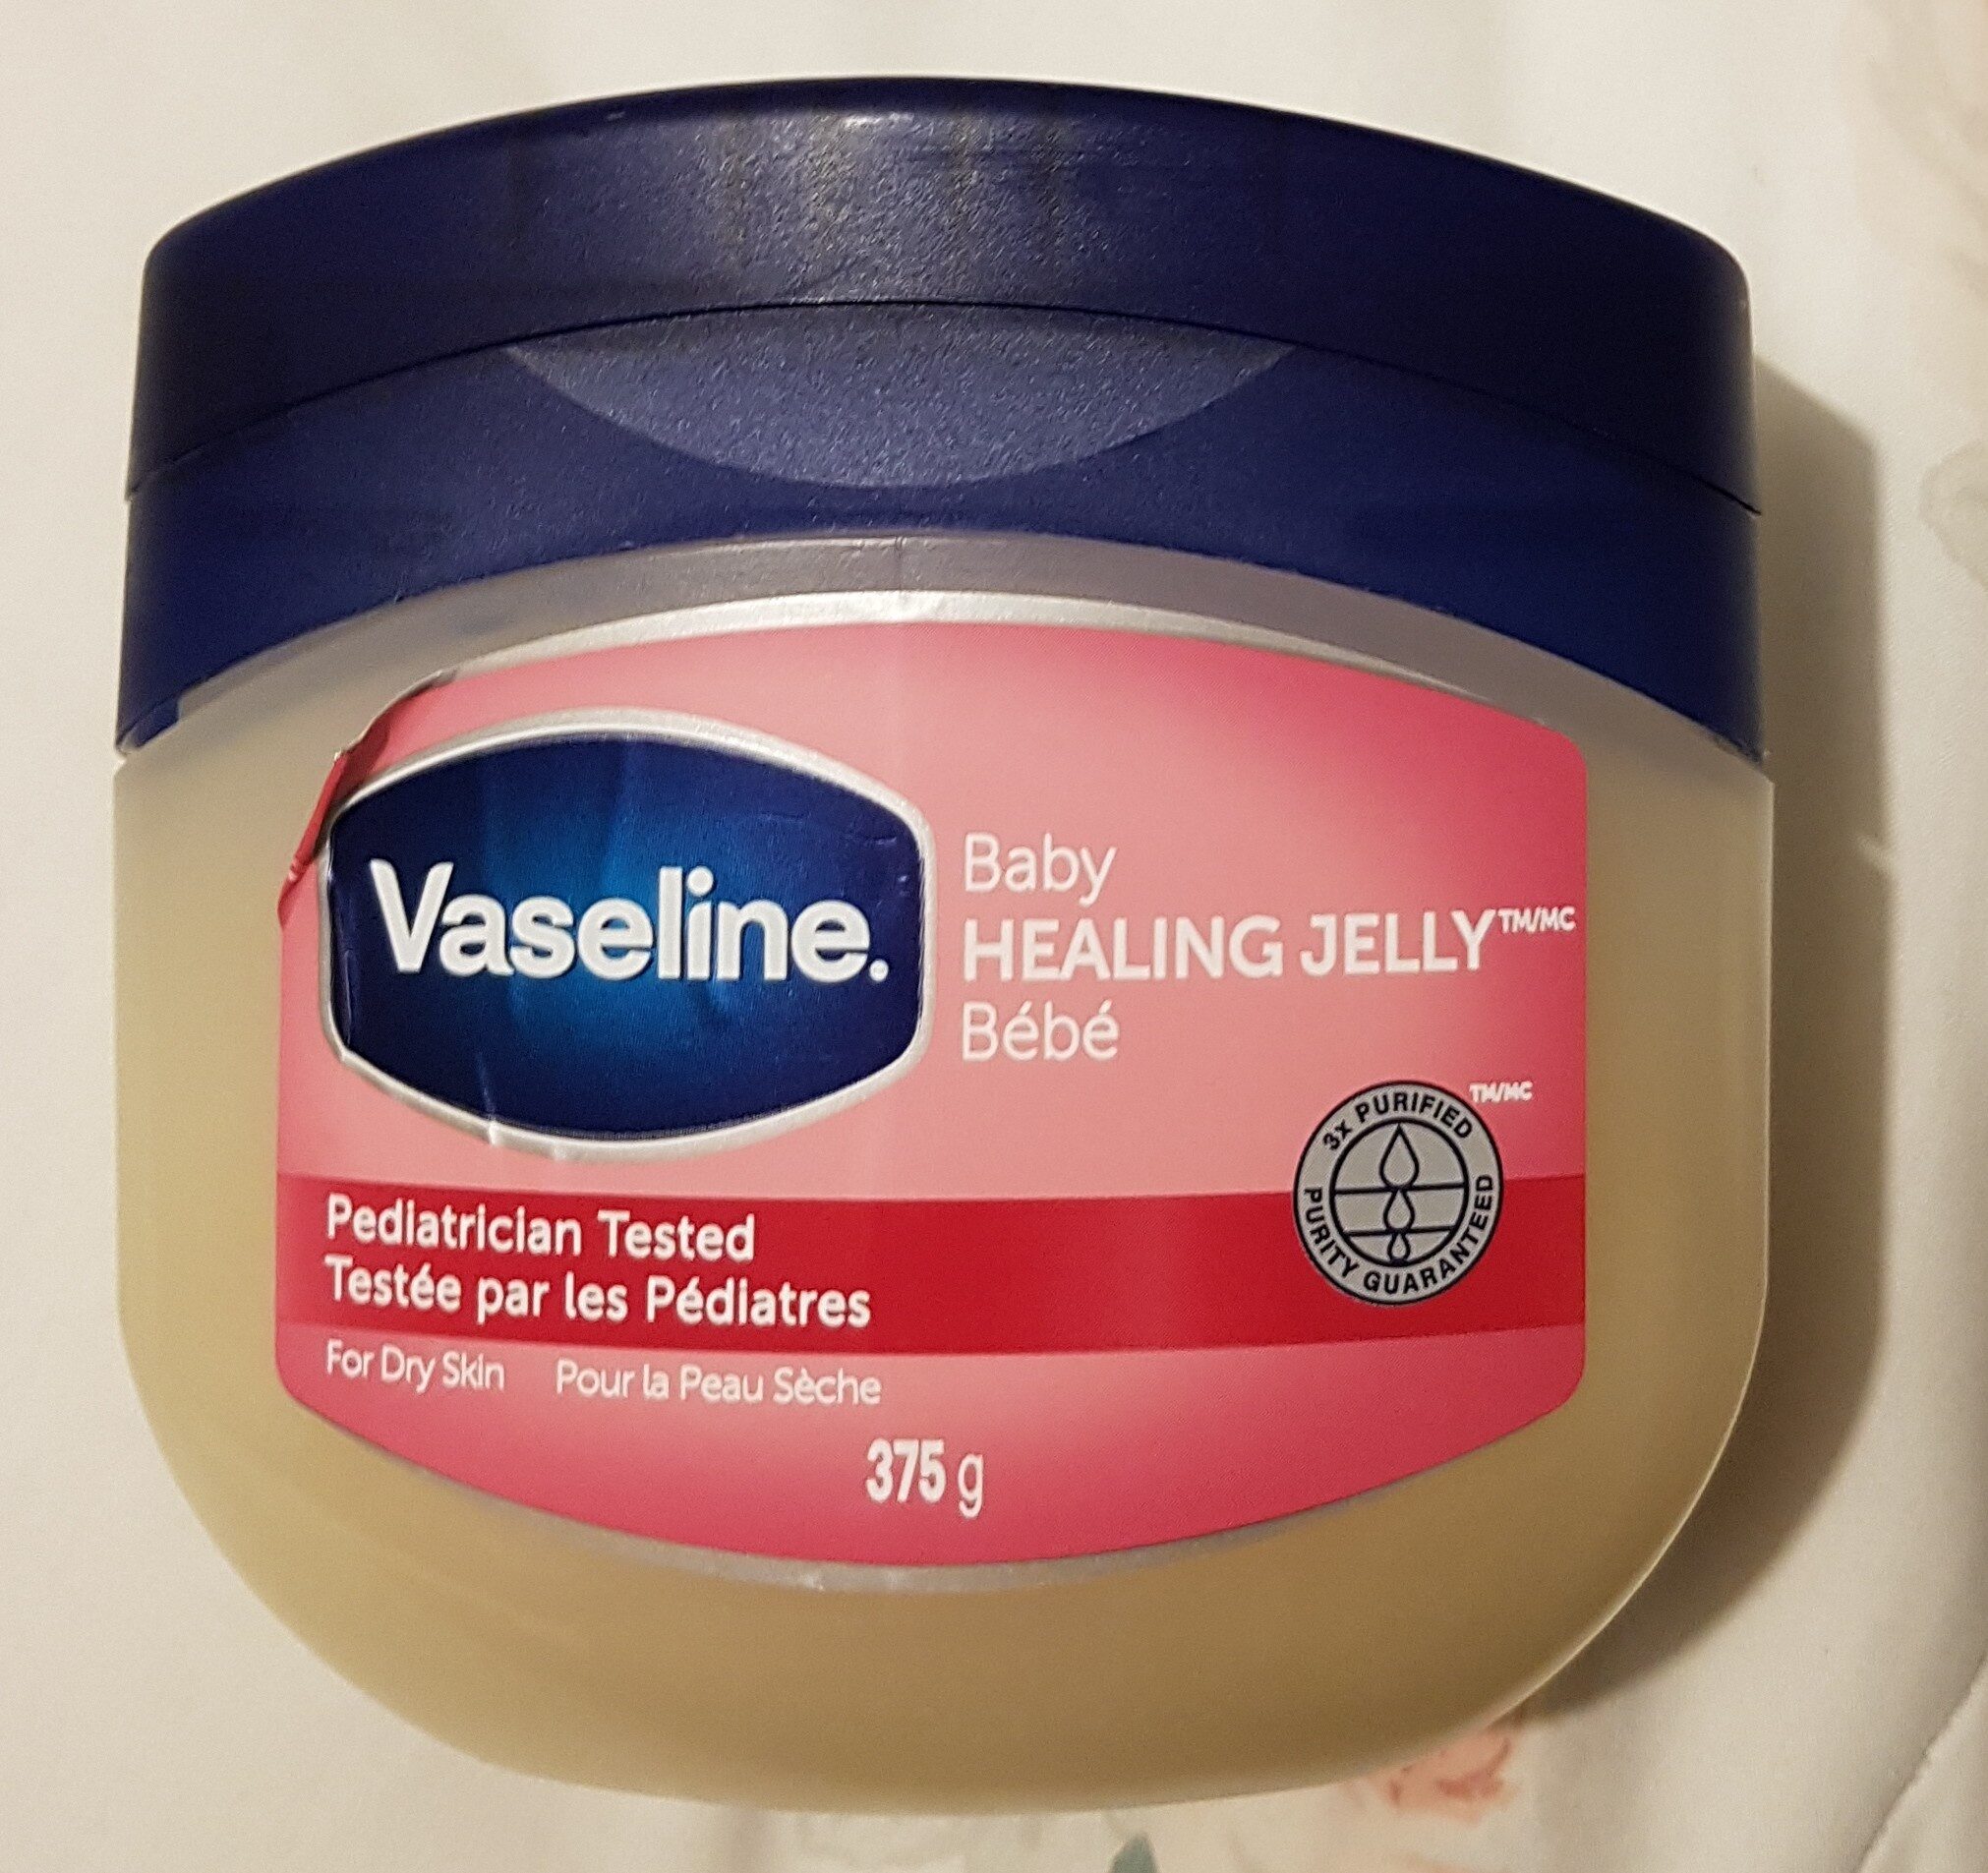 Baby Healing Jelly - Produit - en